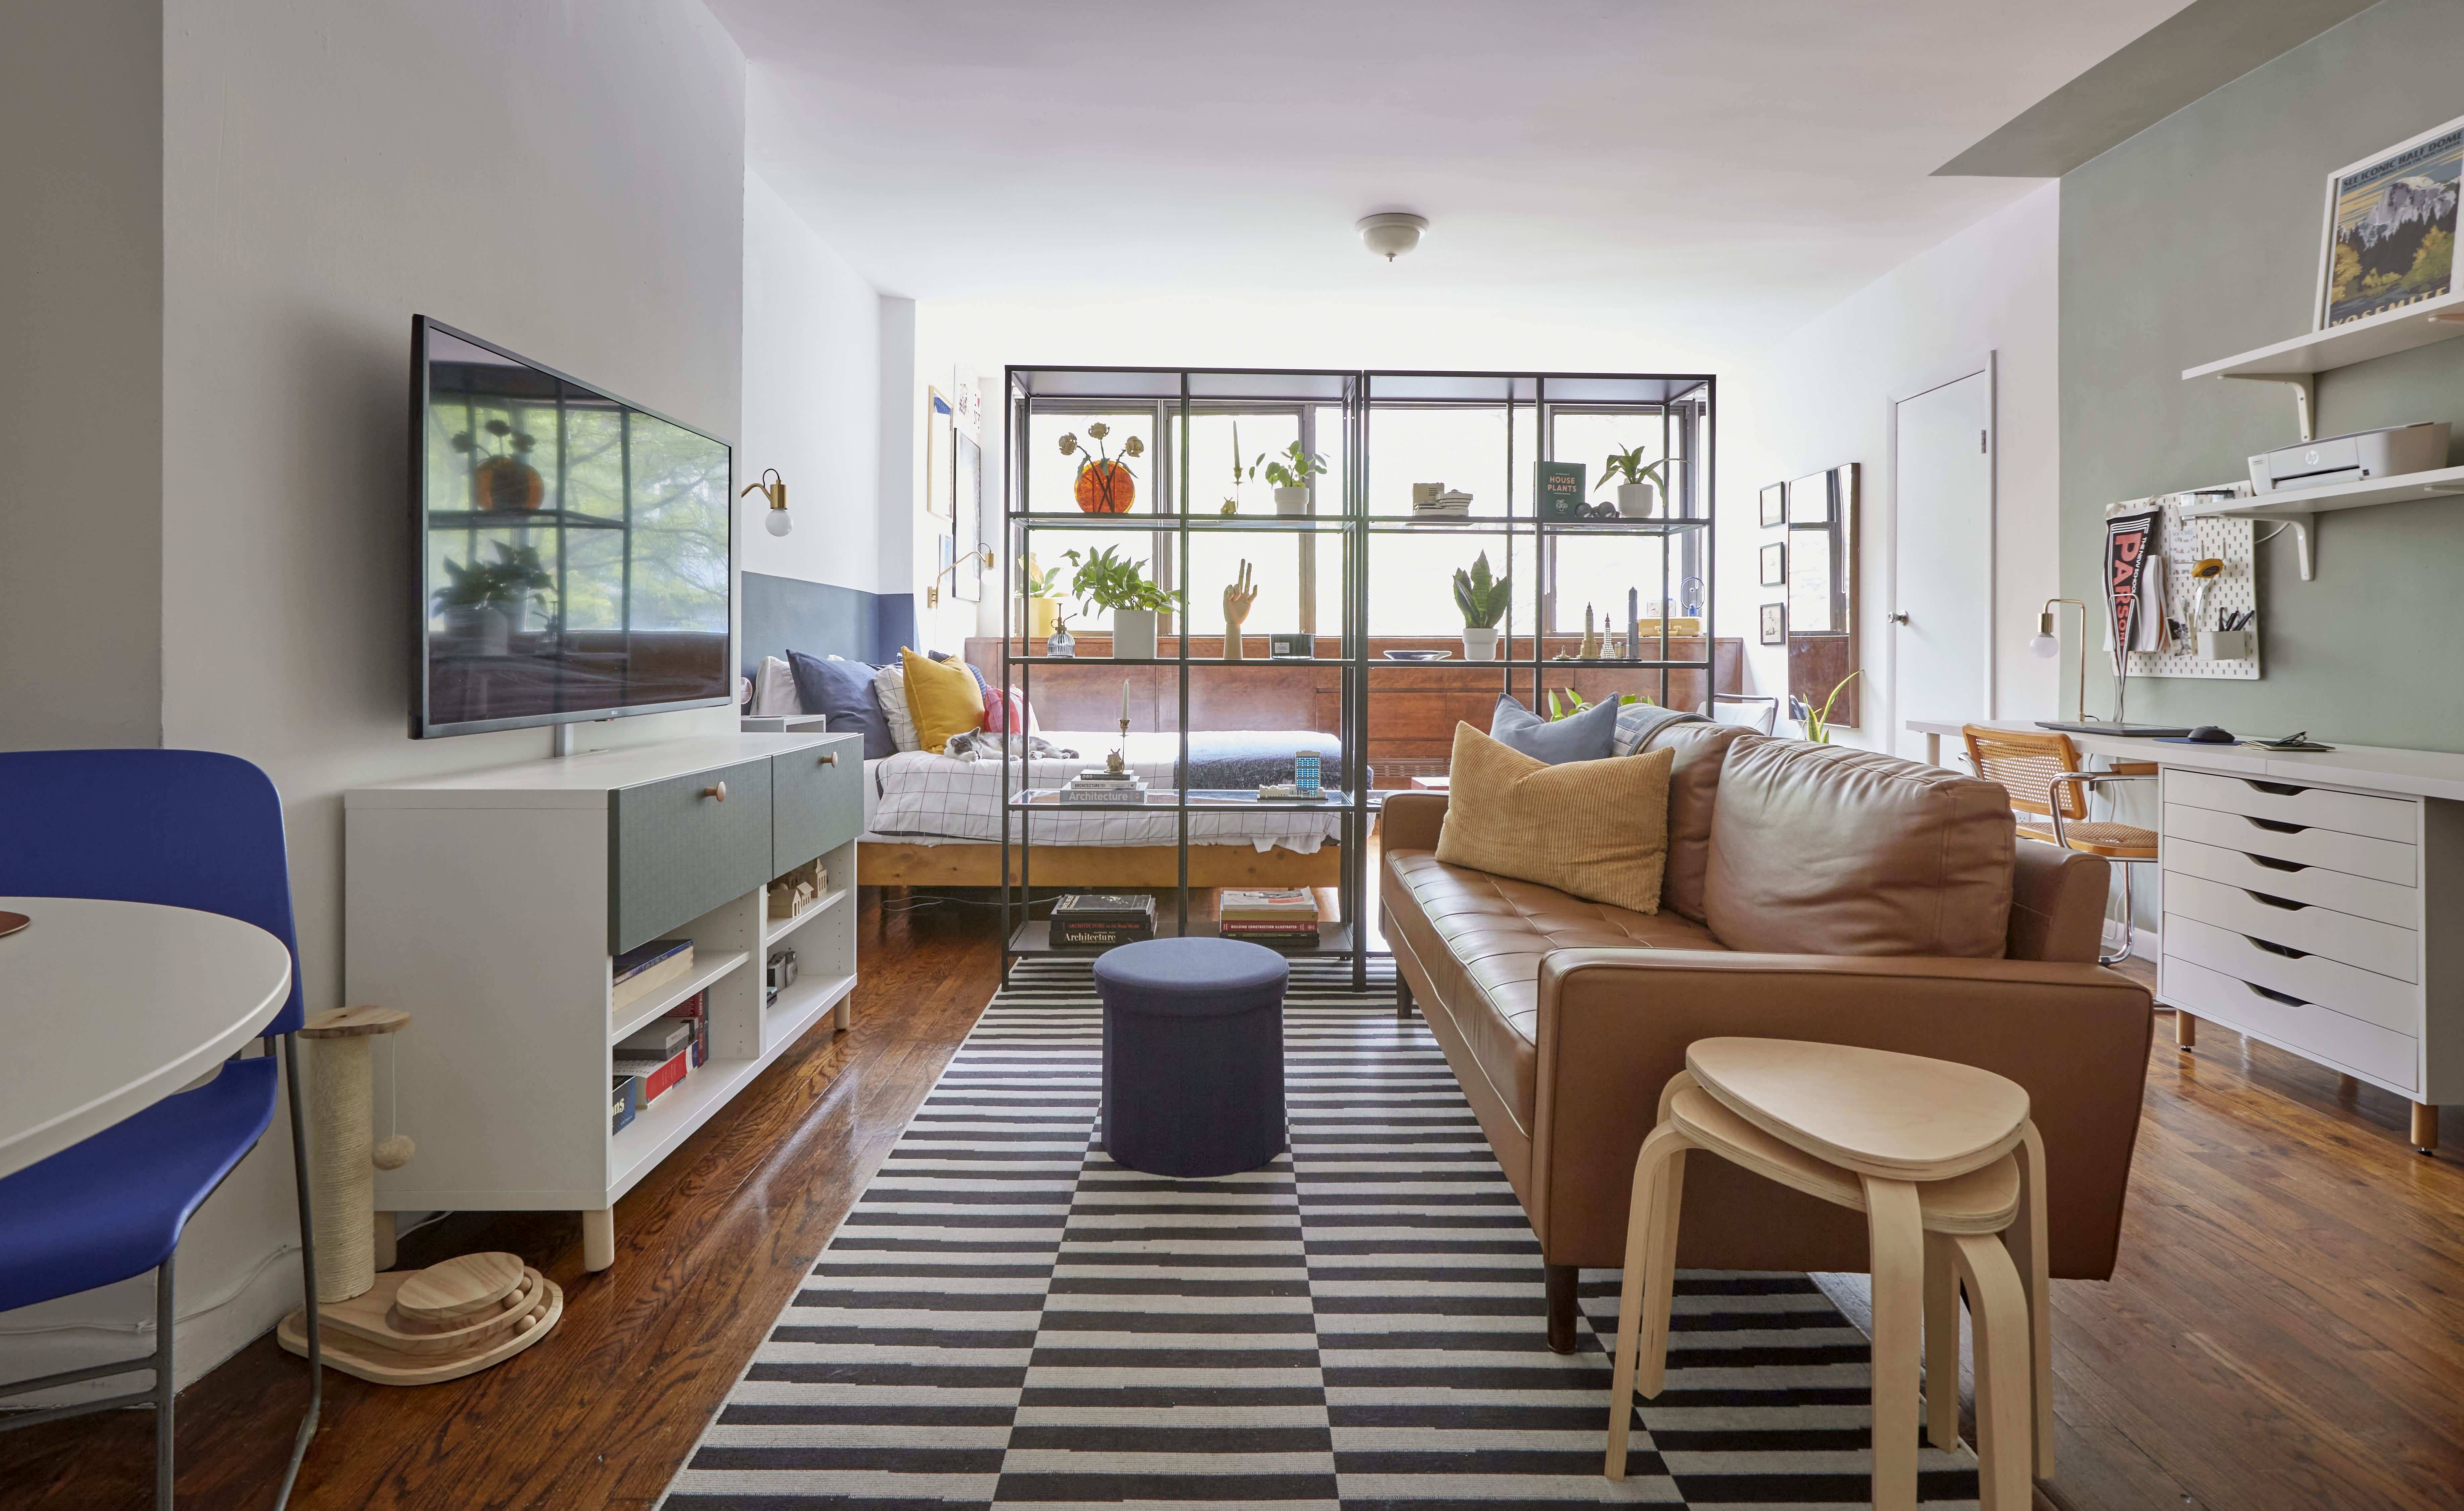 6 Studio Apartment Design Ideas to Maximise your Space